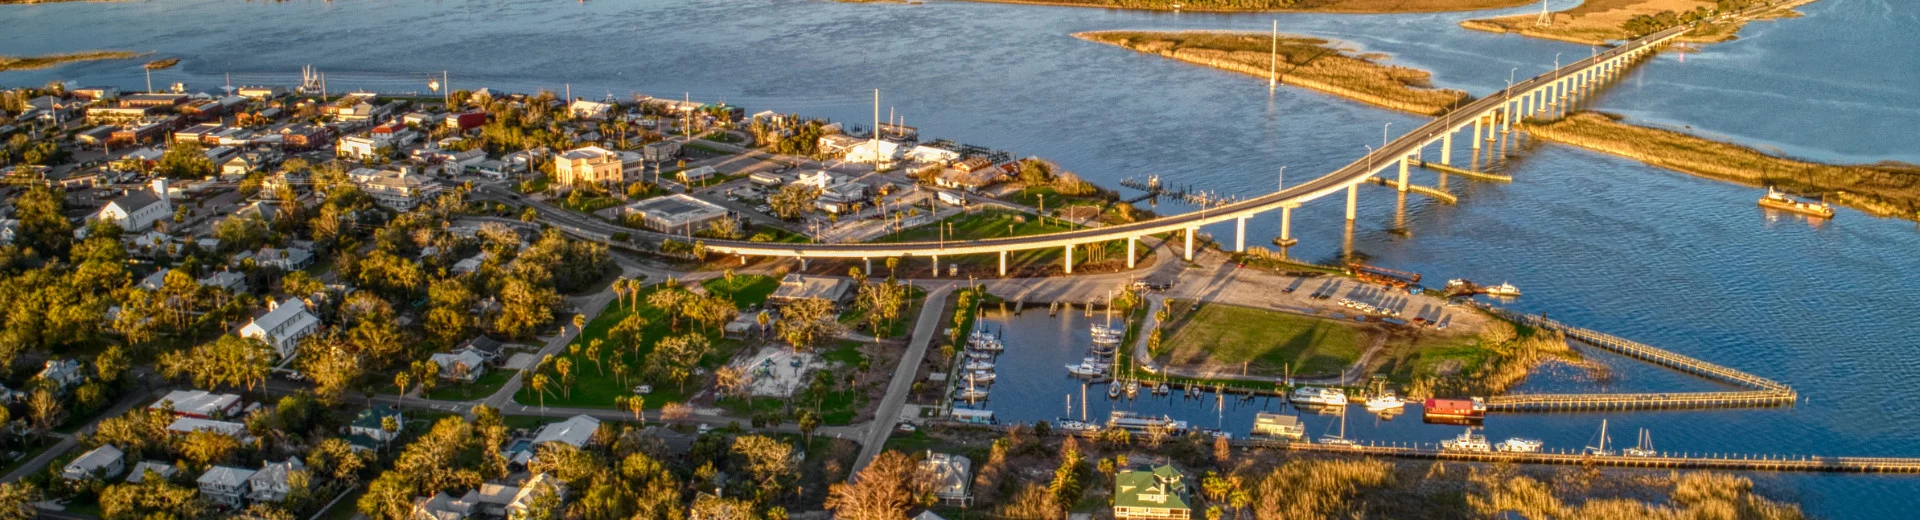 Apalachicola FL Real Estate aerial of Apalachicola Bridge